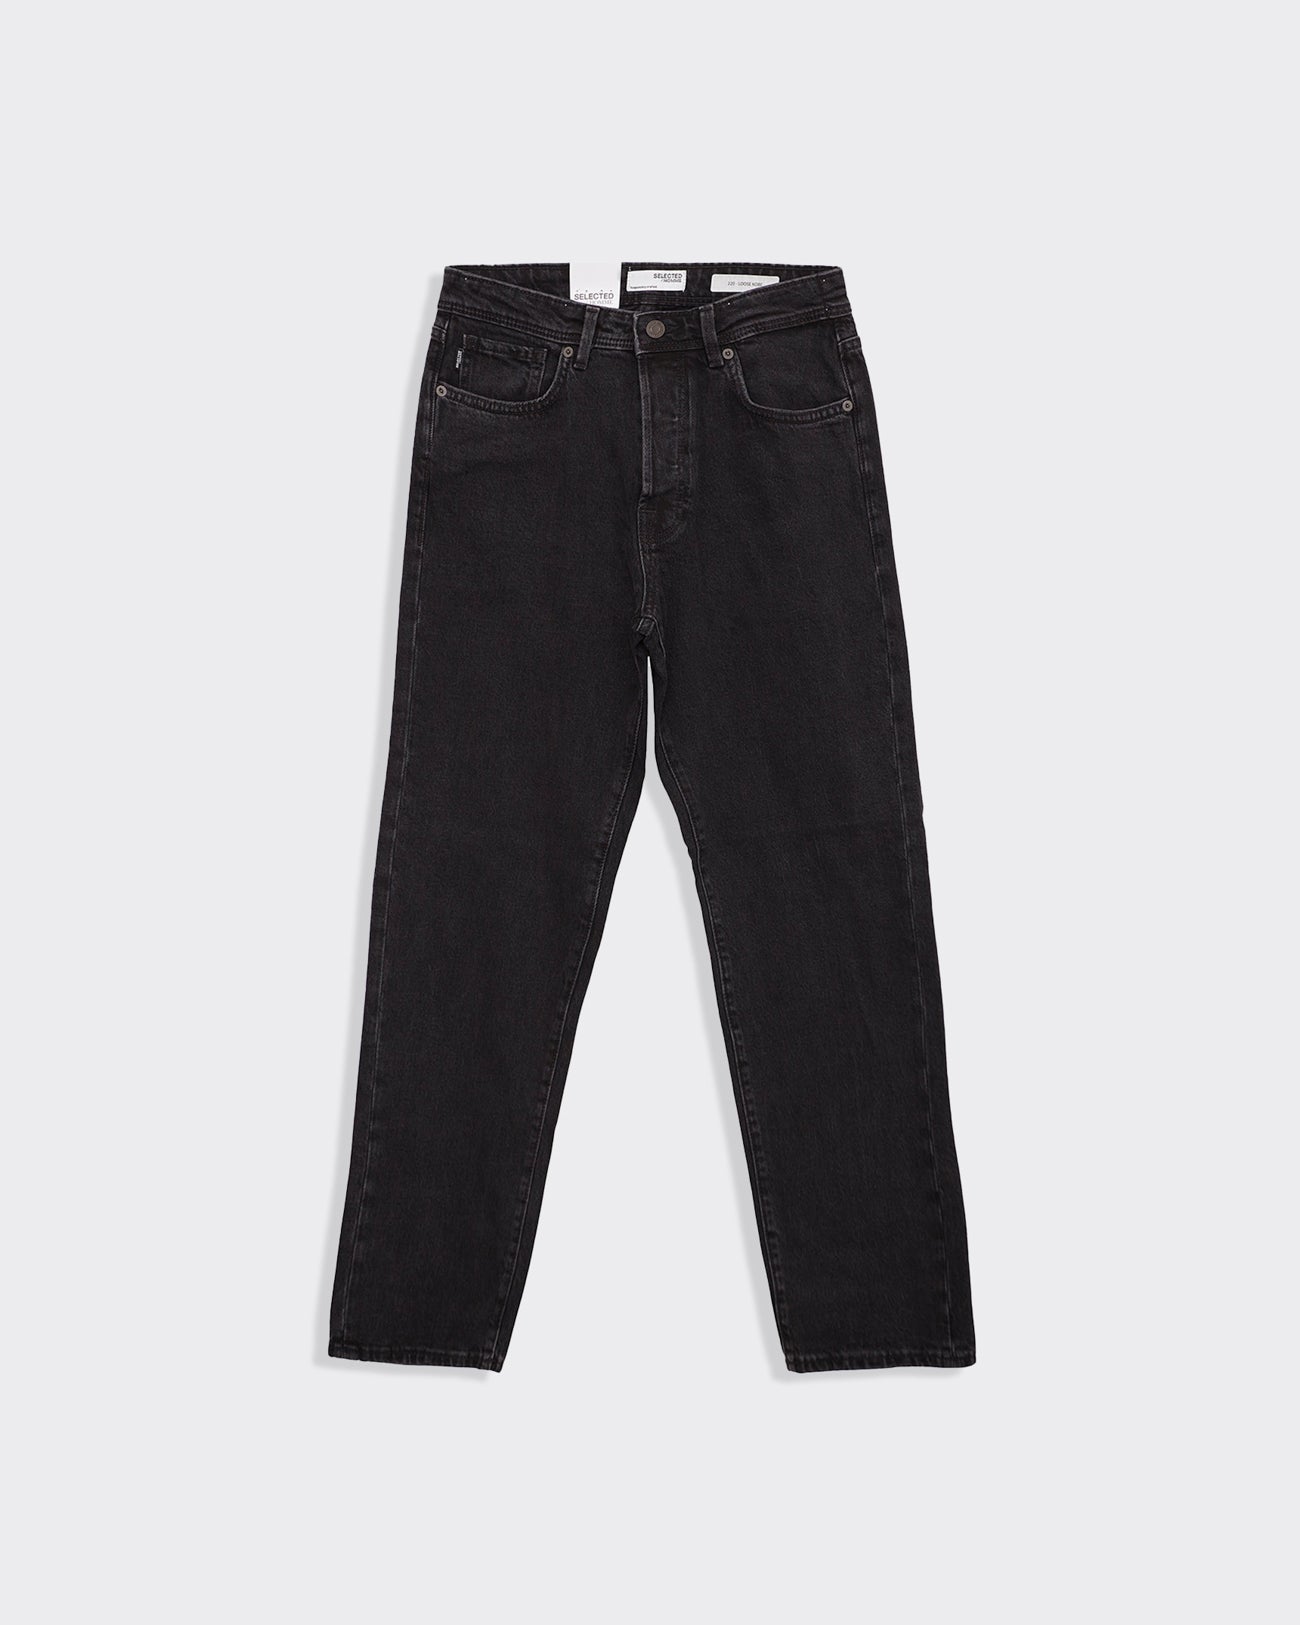 Wide Kobe Black Jeans in Cotton